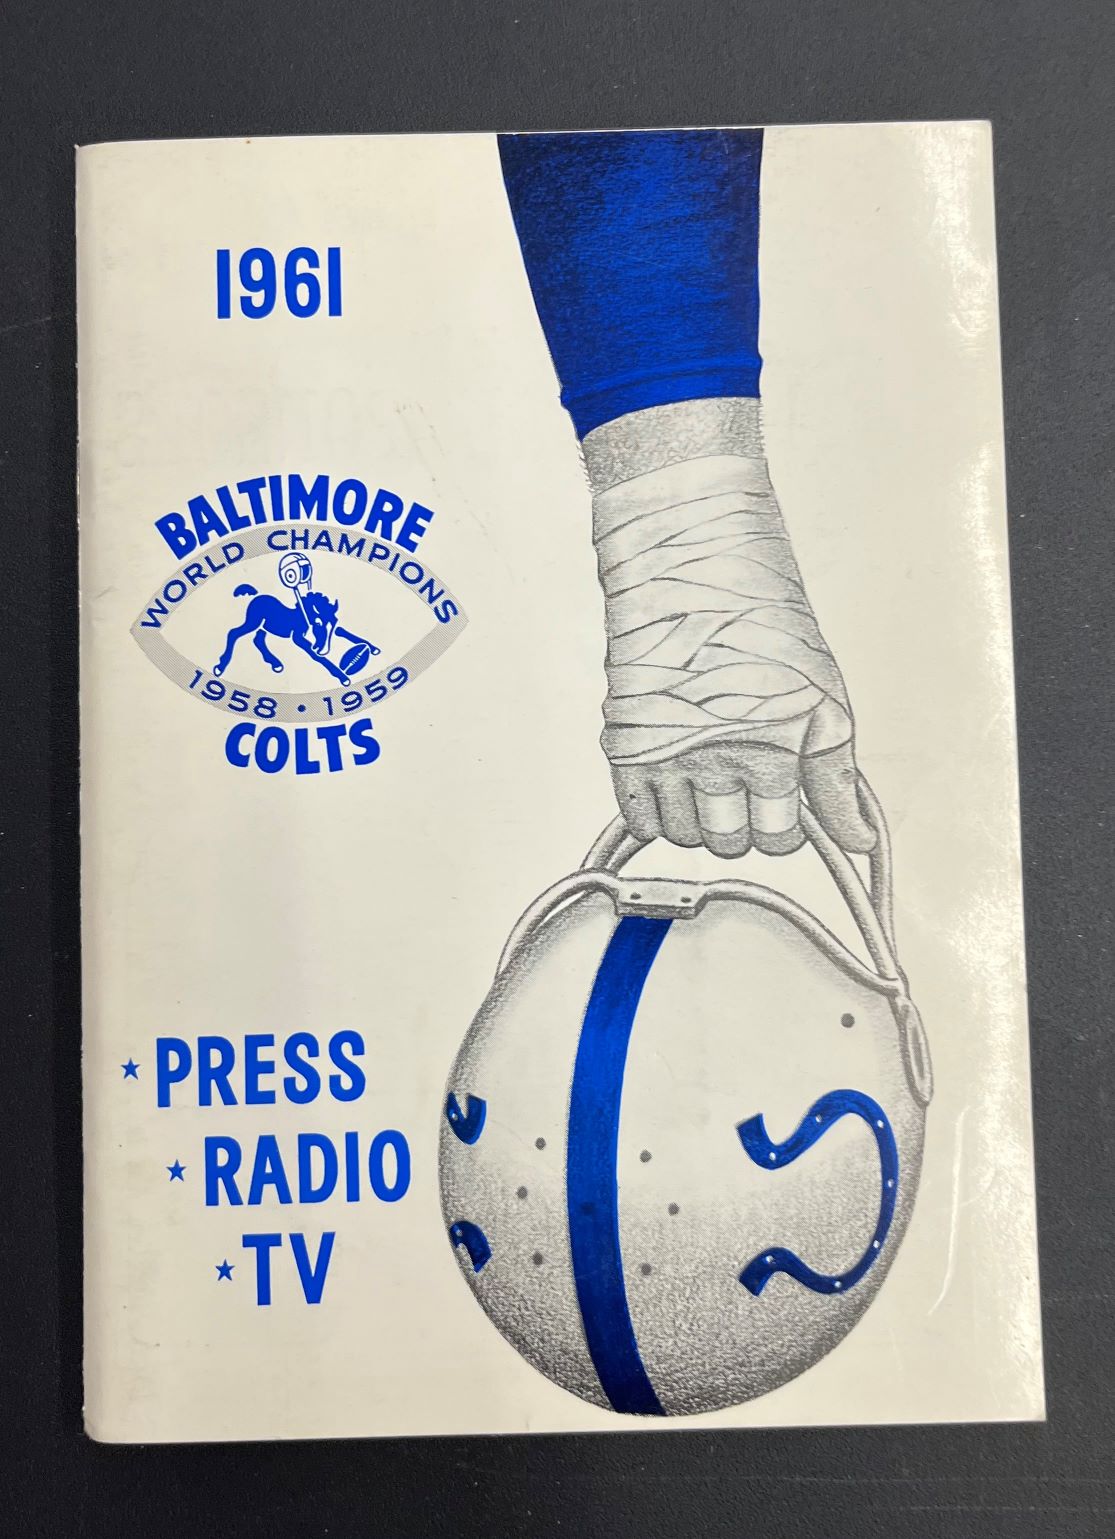 1961 Baltimore Colts Press Guide Radio & TV